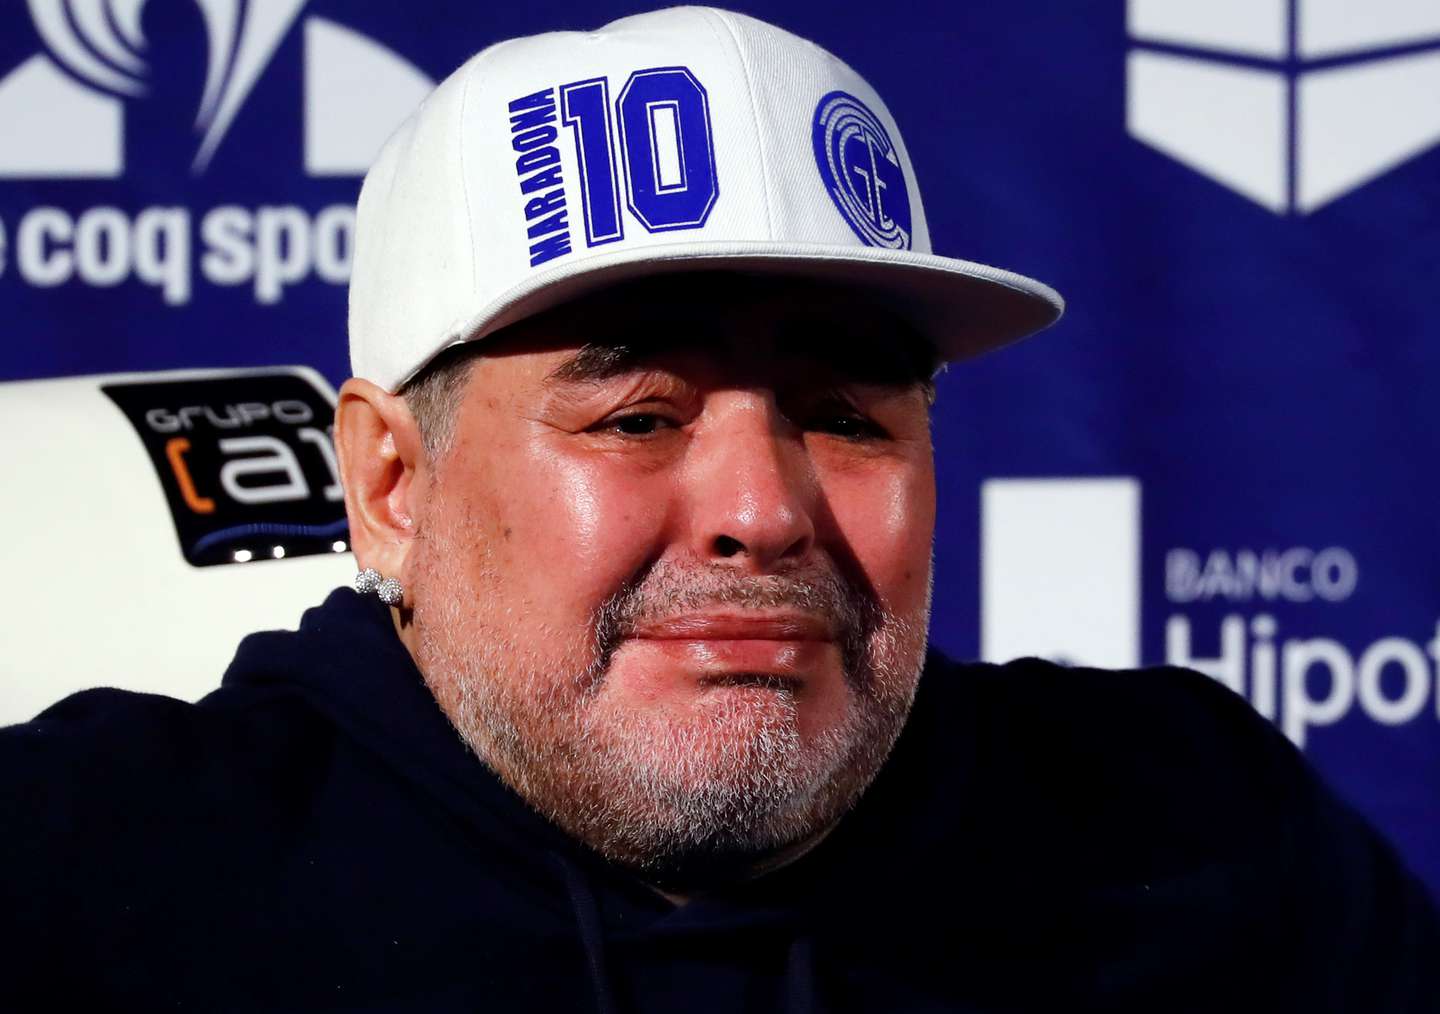 Proponen que el corazón de Diego Maradona acompañe a la Selección argentina al Mundial de Qatar 2022